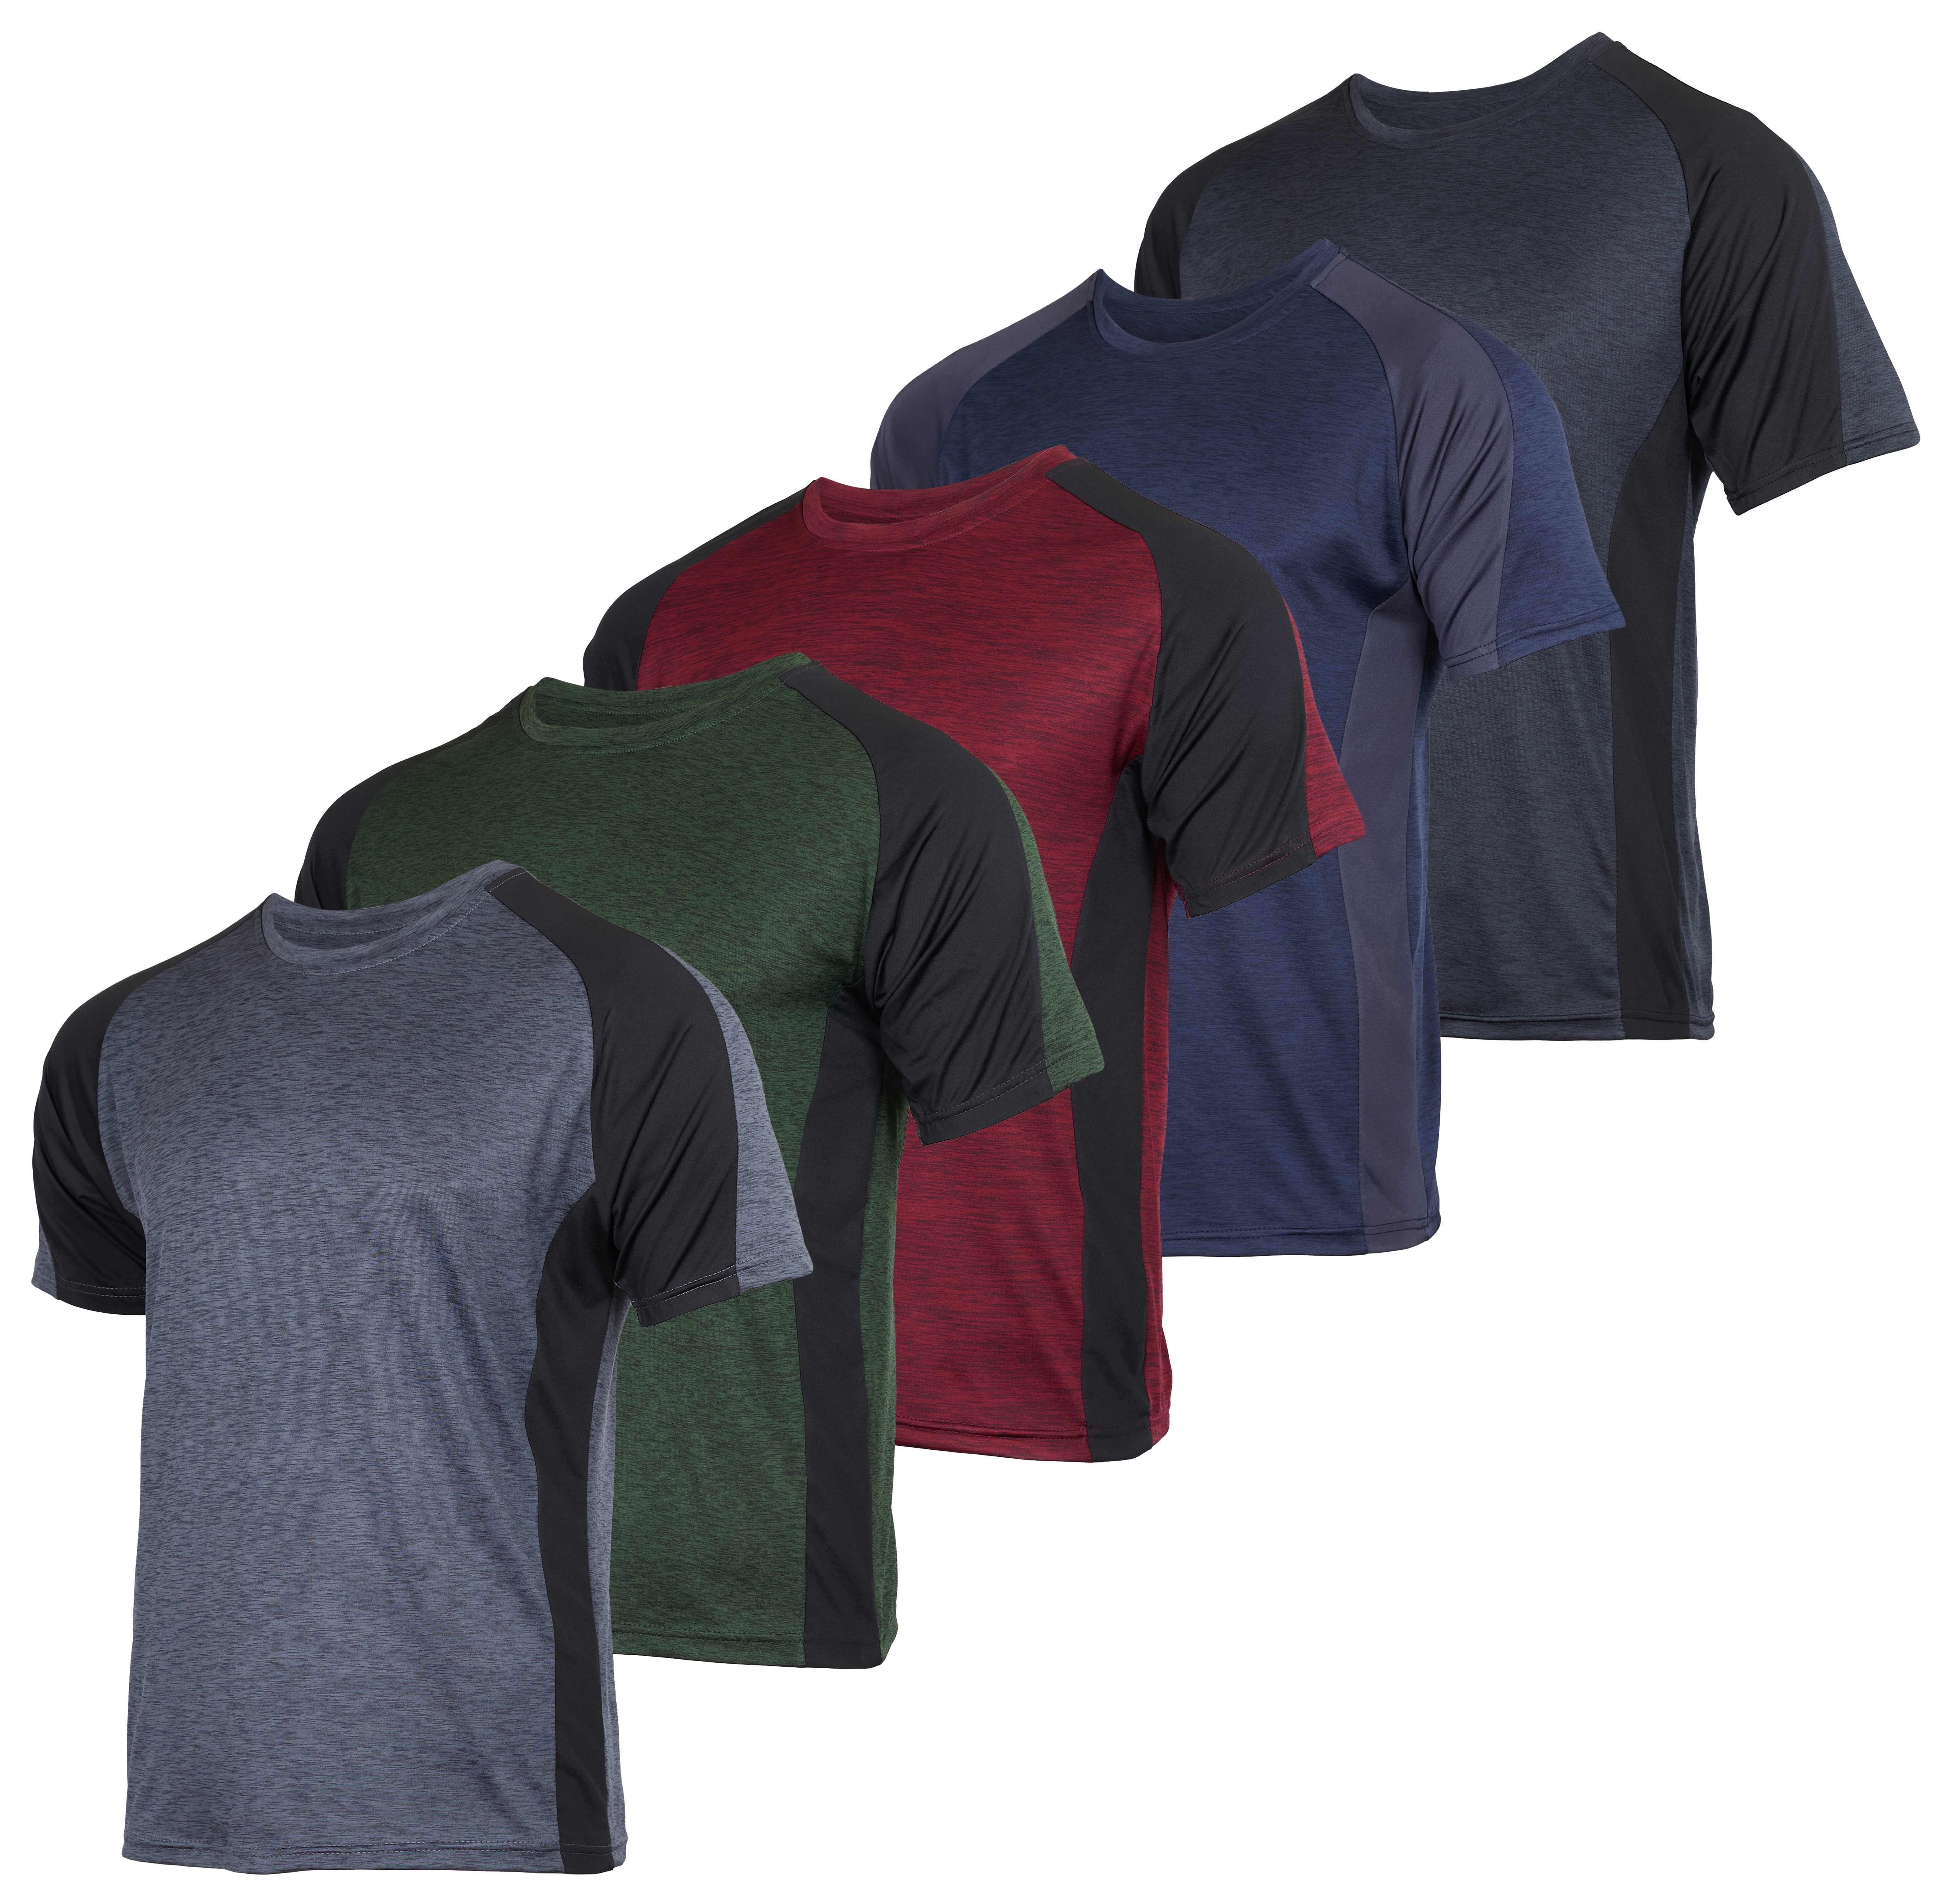 Real Essentials - Paquete de 5 camisetas deportivas Dry-Fit de cuello  redondo para hombre, rendimiento activo que disipa la humedad